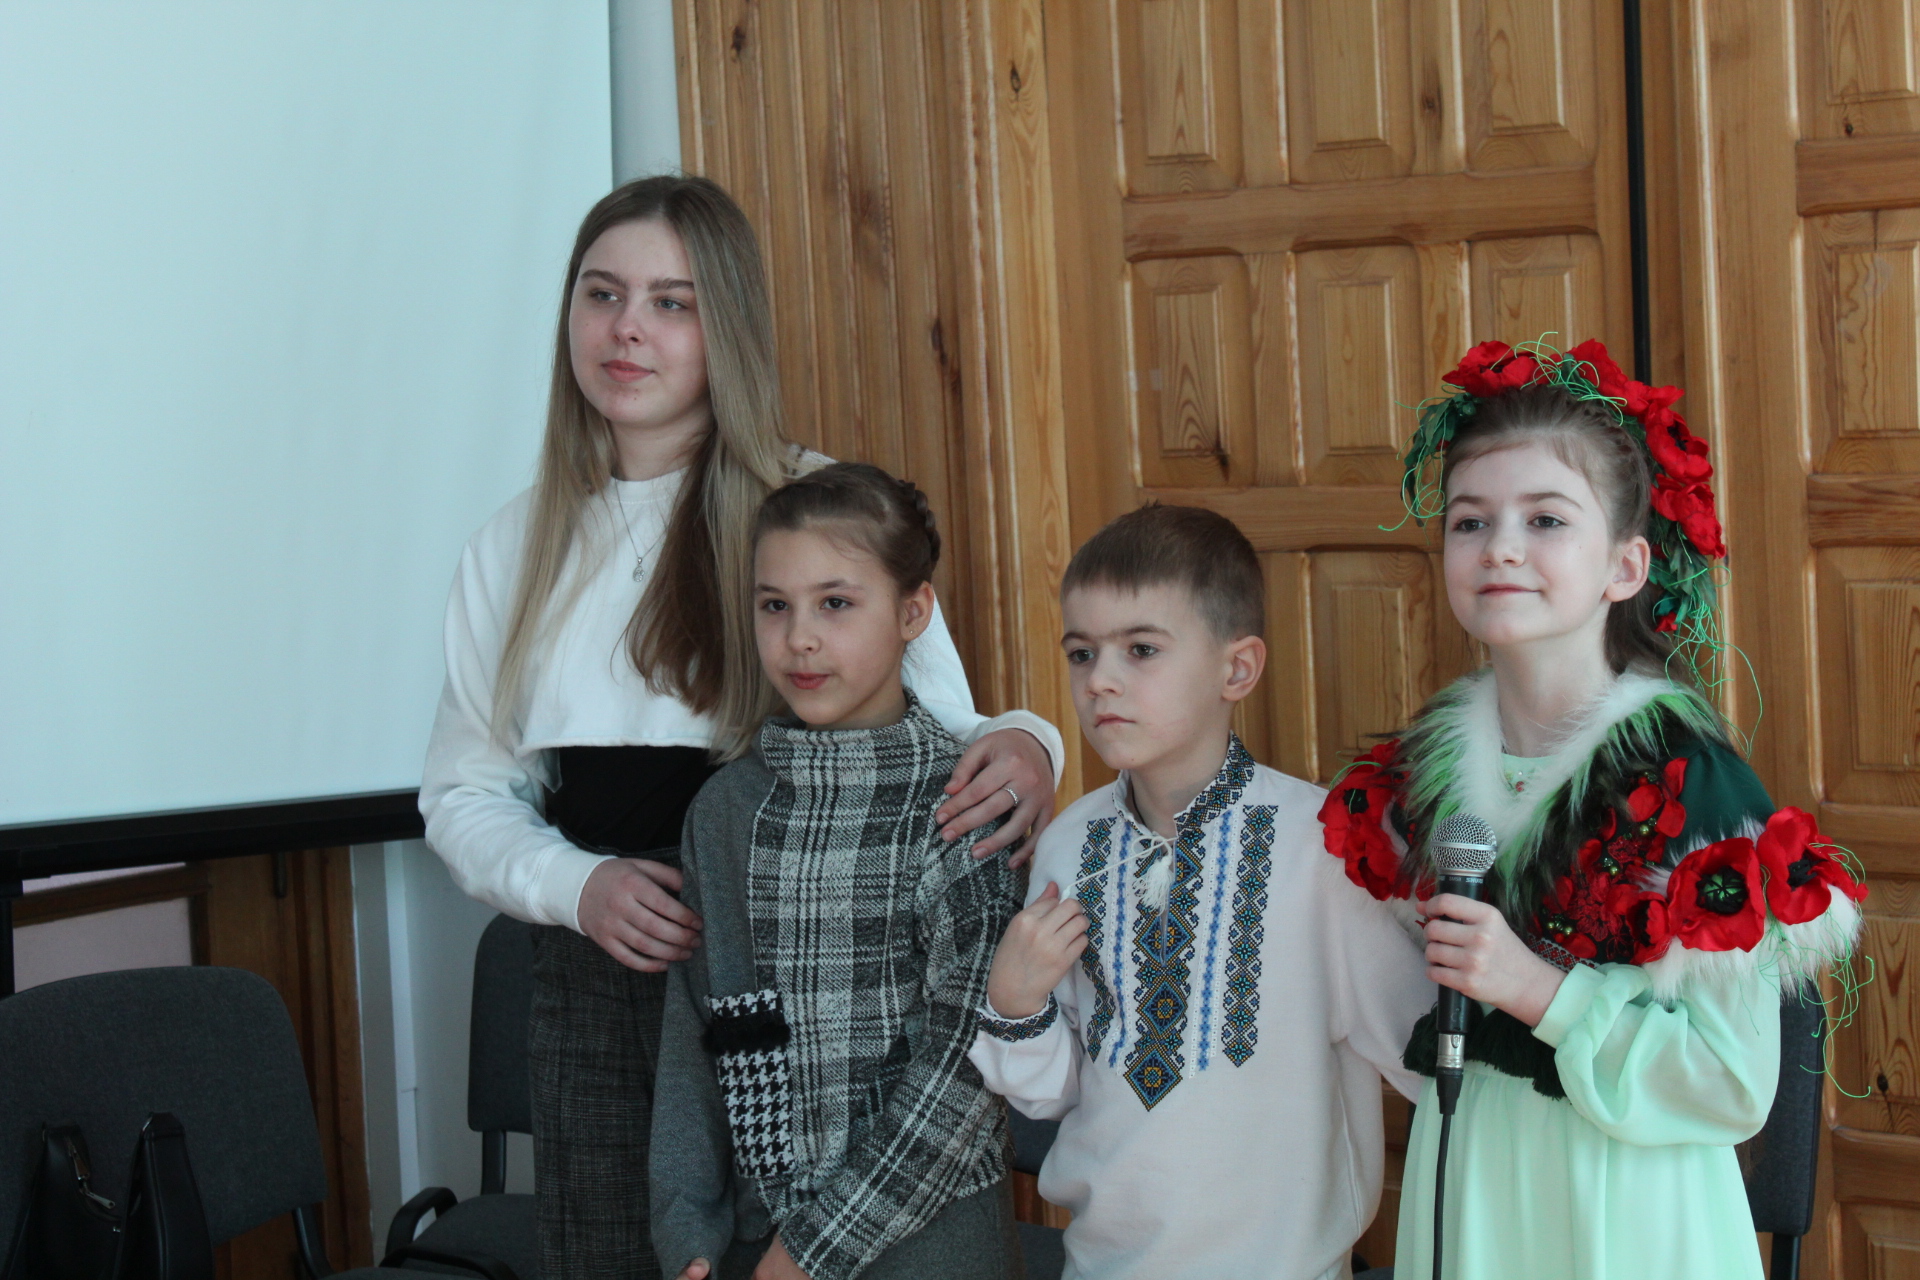 Wzruszający koncert młodej Ukrainki